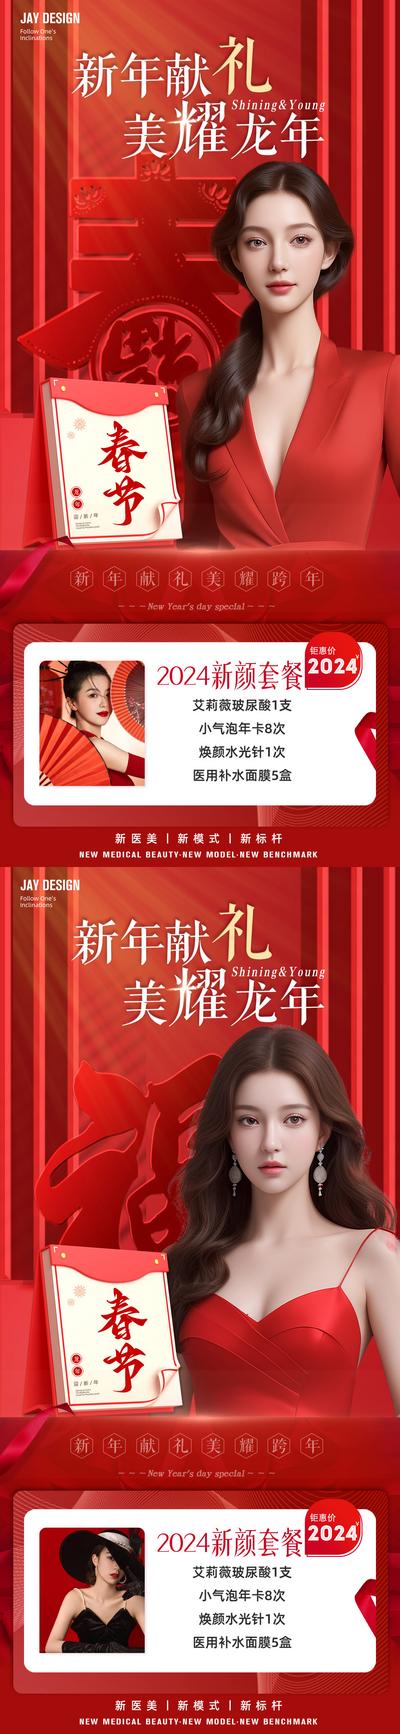 【南门网】广告 海报 医美 人物 促销 中式 红金 新年 龙年 春节 卡项 AI女 项目 整形 喜庆 2024